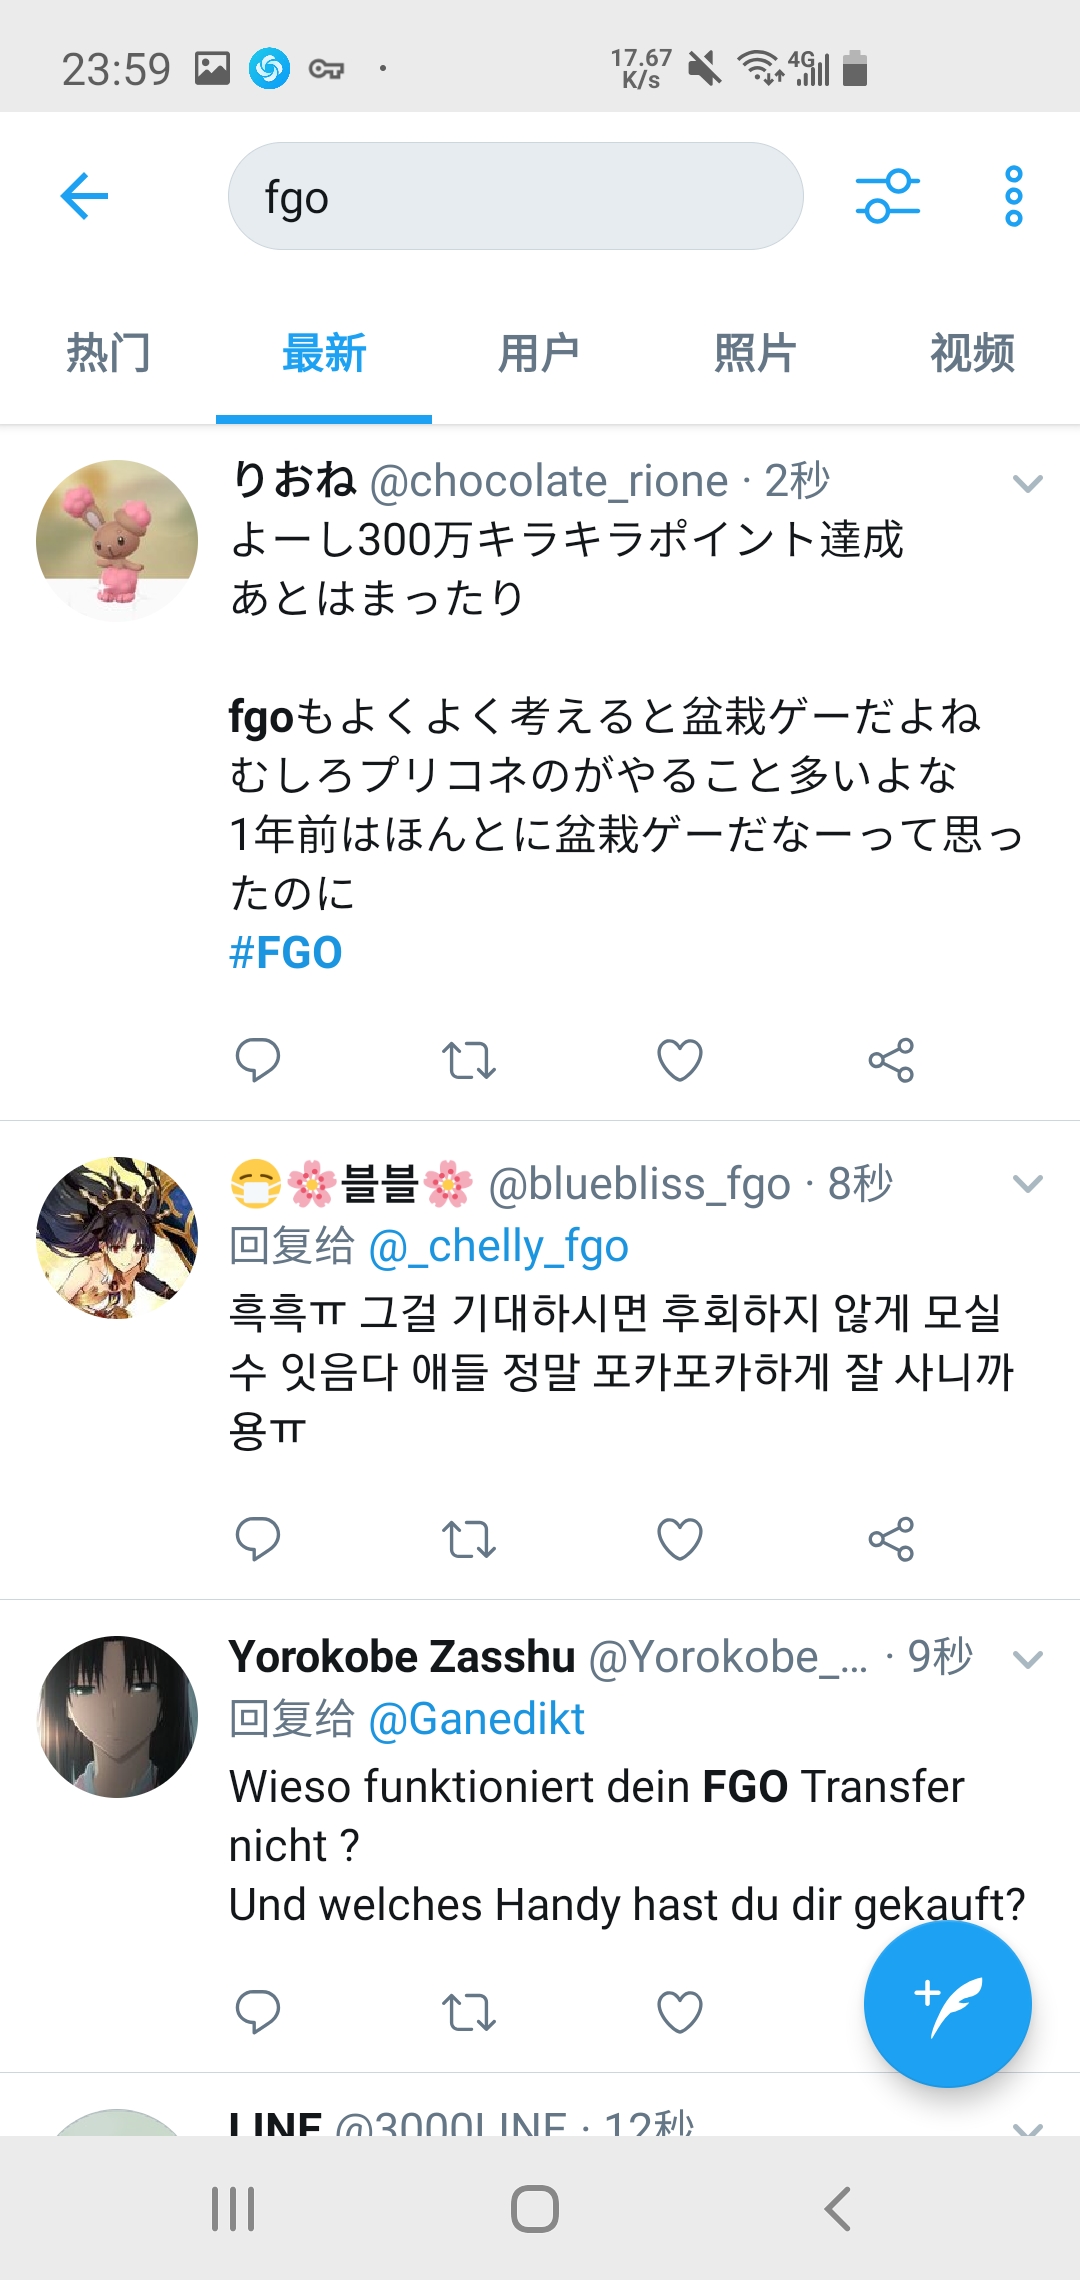 破事氵 都知道fgo是推特上热度最高的游戏 事实确实很惊人nga玩家社区